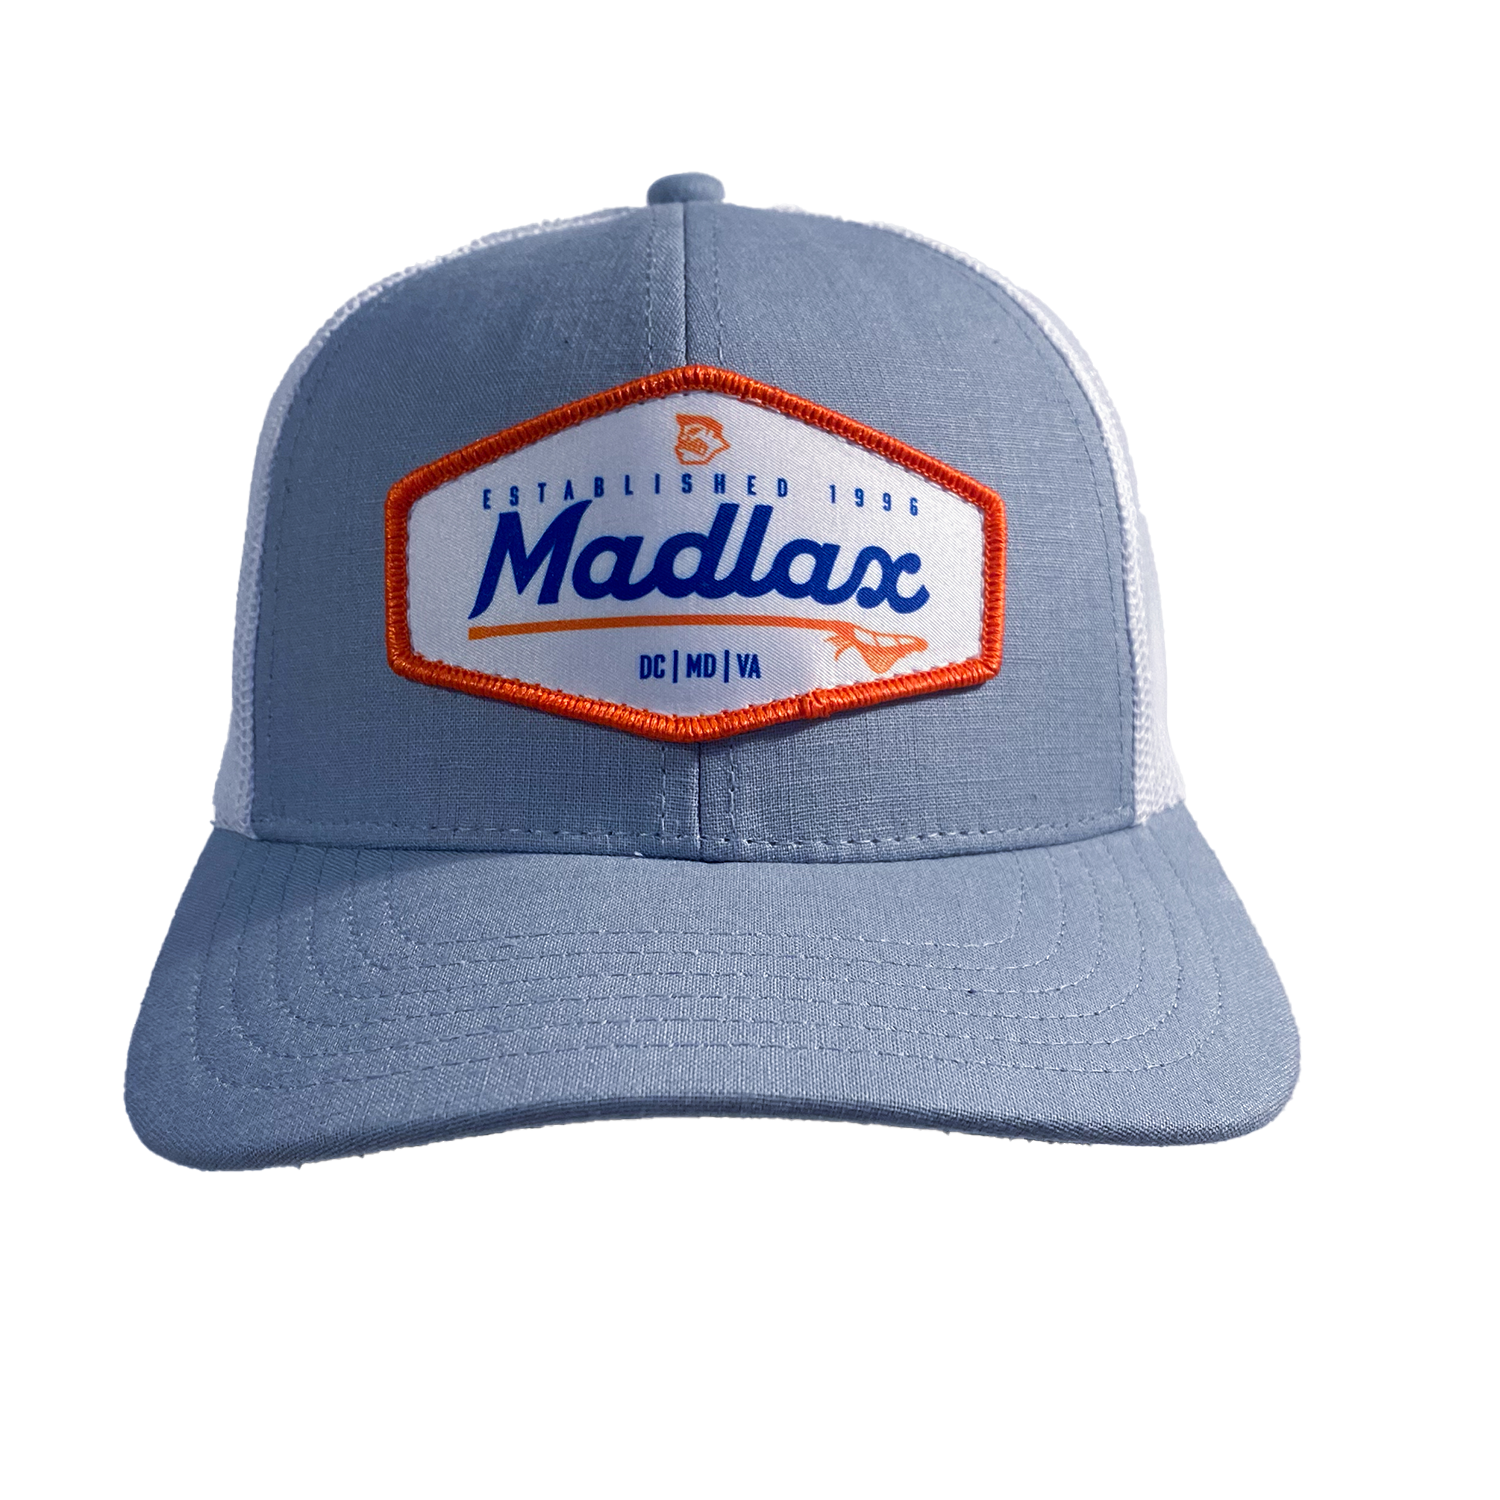 MadGear Ocean Grey Longboard Mesh Back Hat